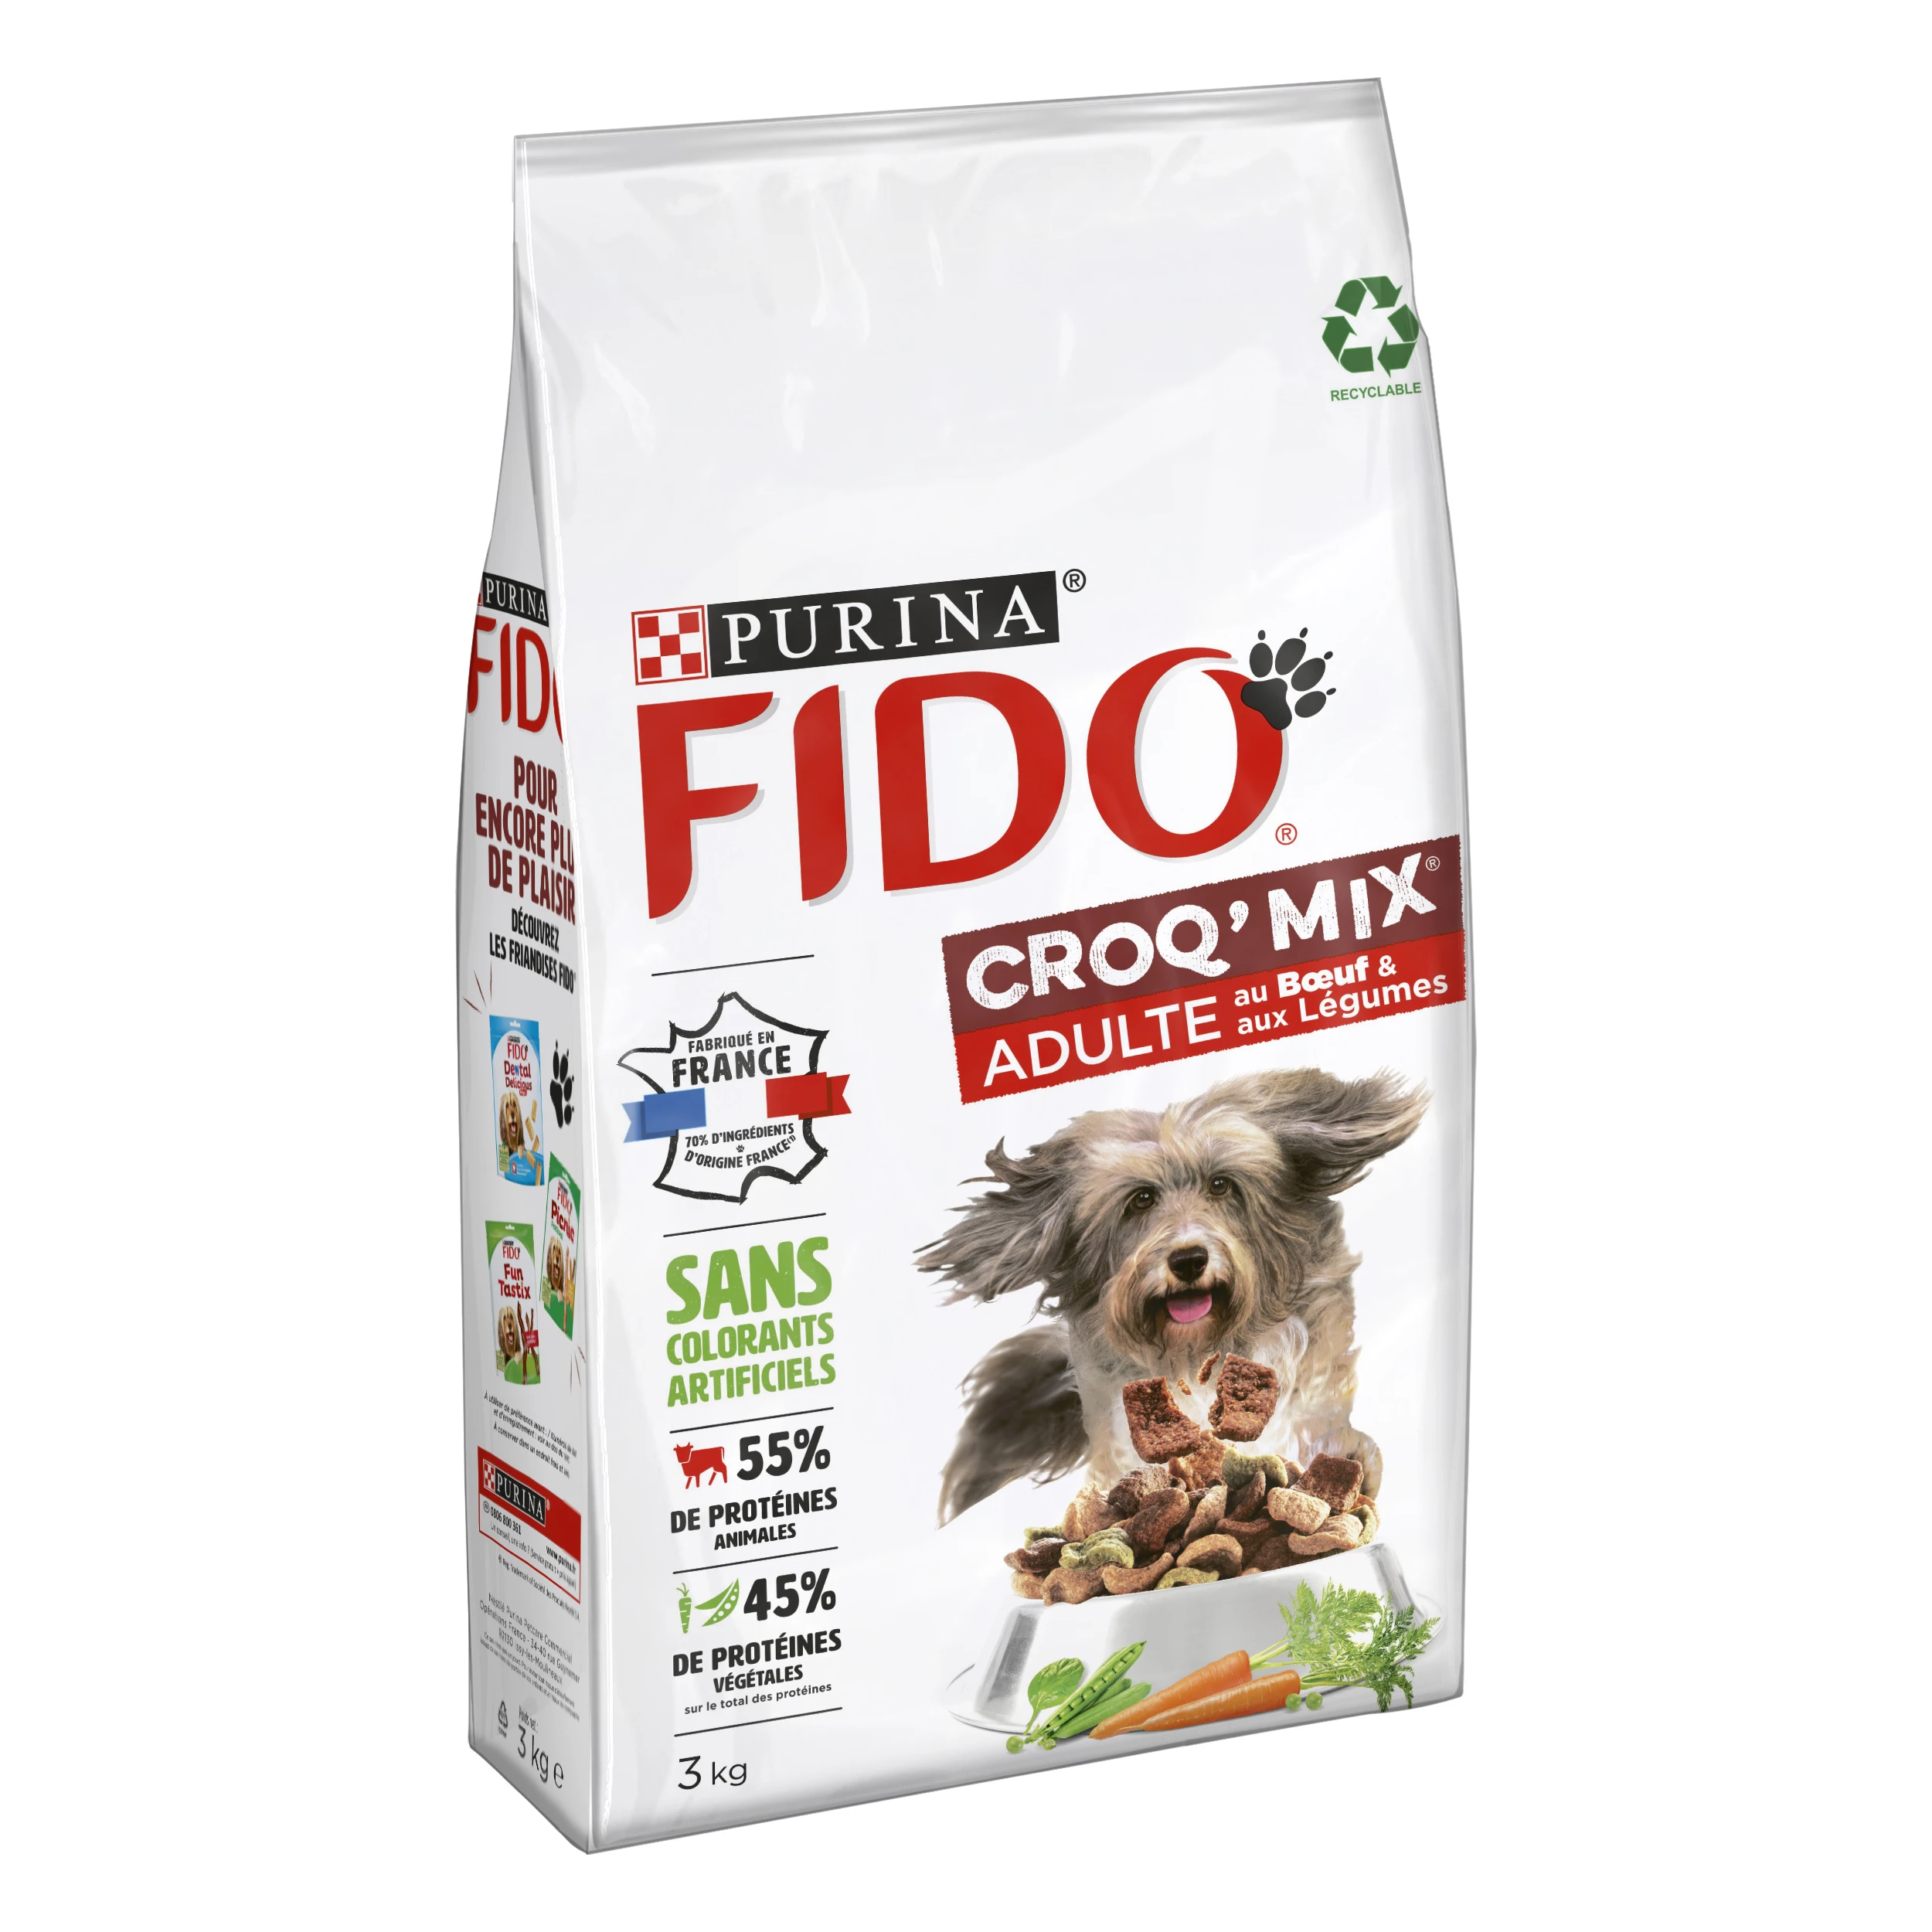 Croquettes croq' mix pour chien adultes au boeuf & aux légumes 3kg - PURINA FIDO